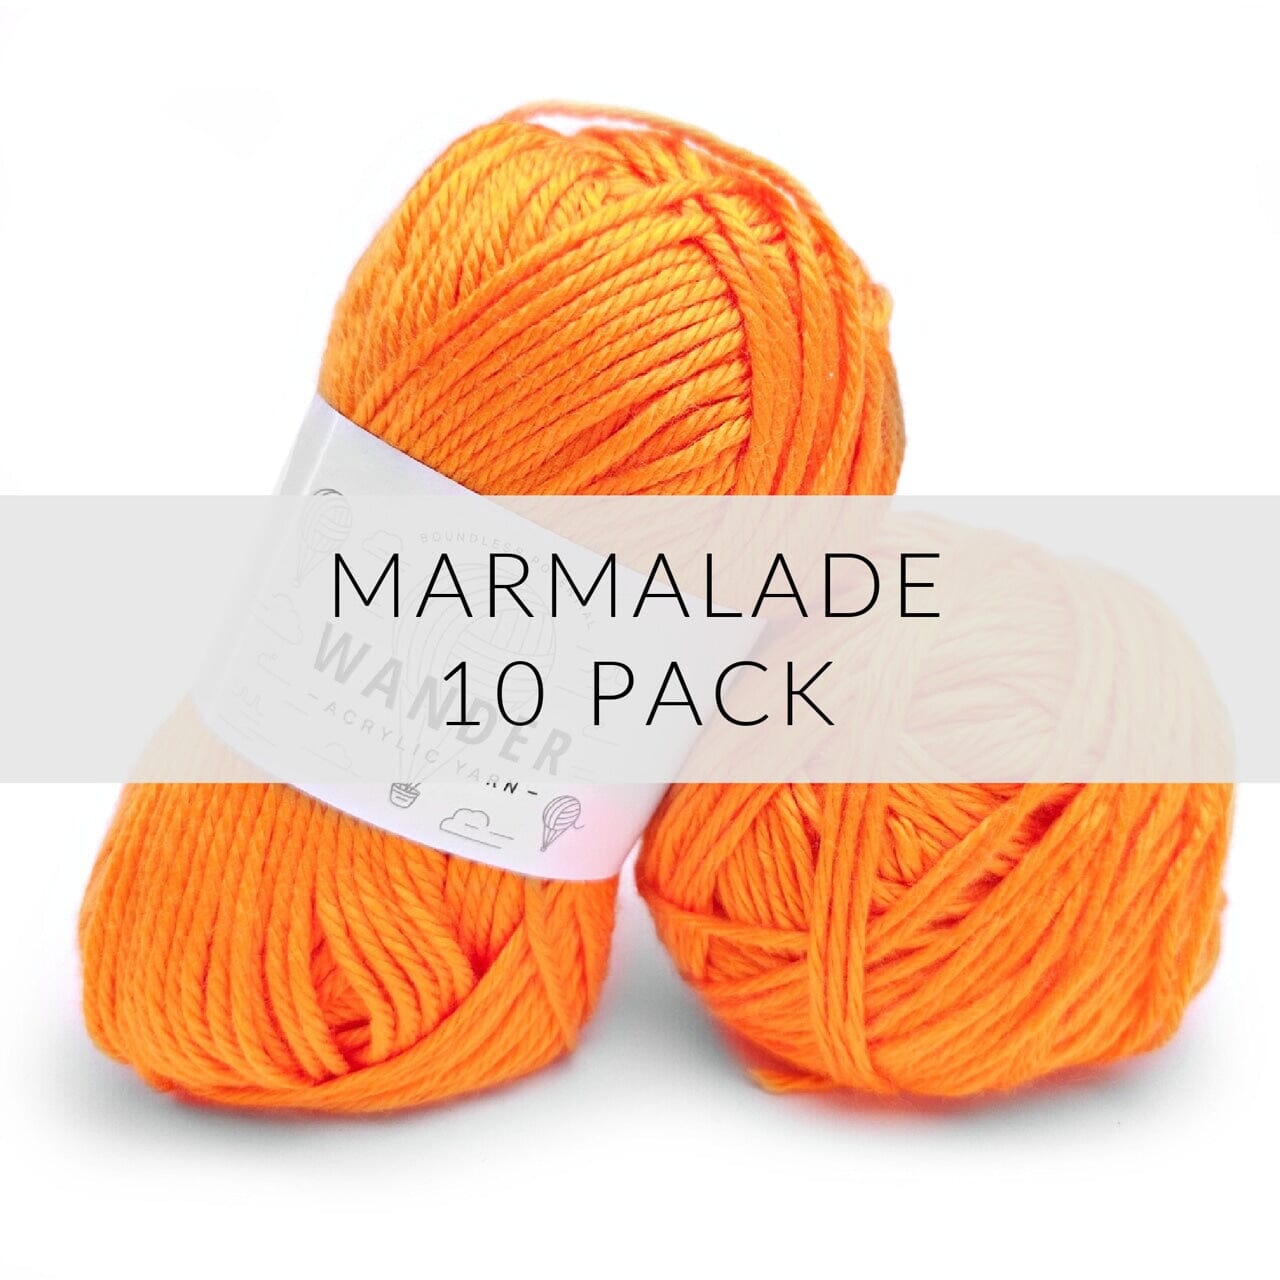 10 Pack Wander Acrylic Yarn Yarn FurlsCrochet Marmalade 